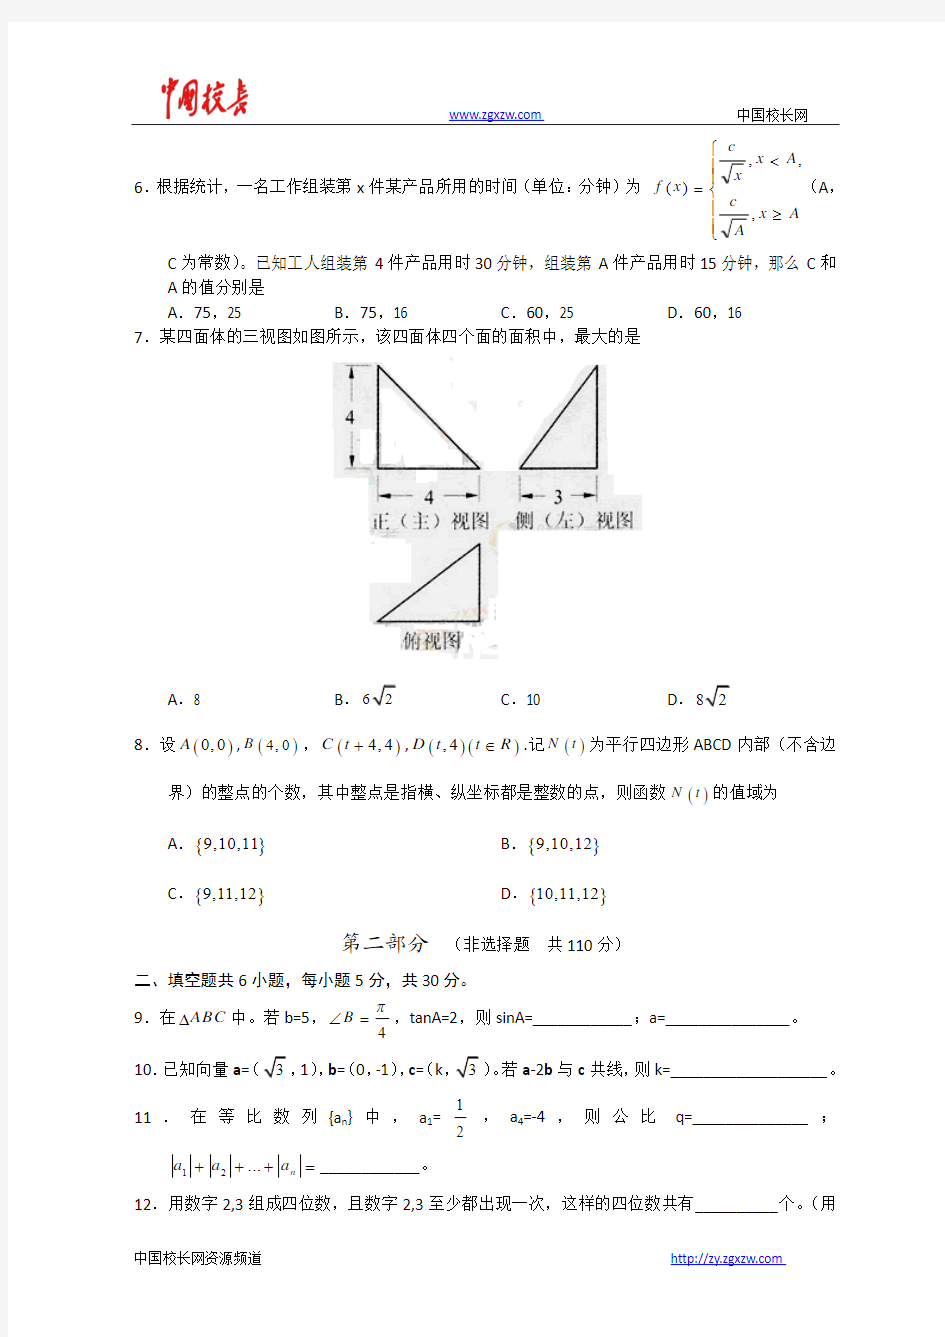 2011年全国高考理科数学试题及答案-北京